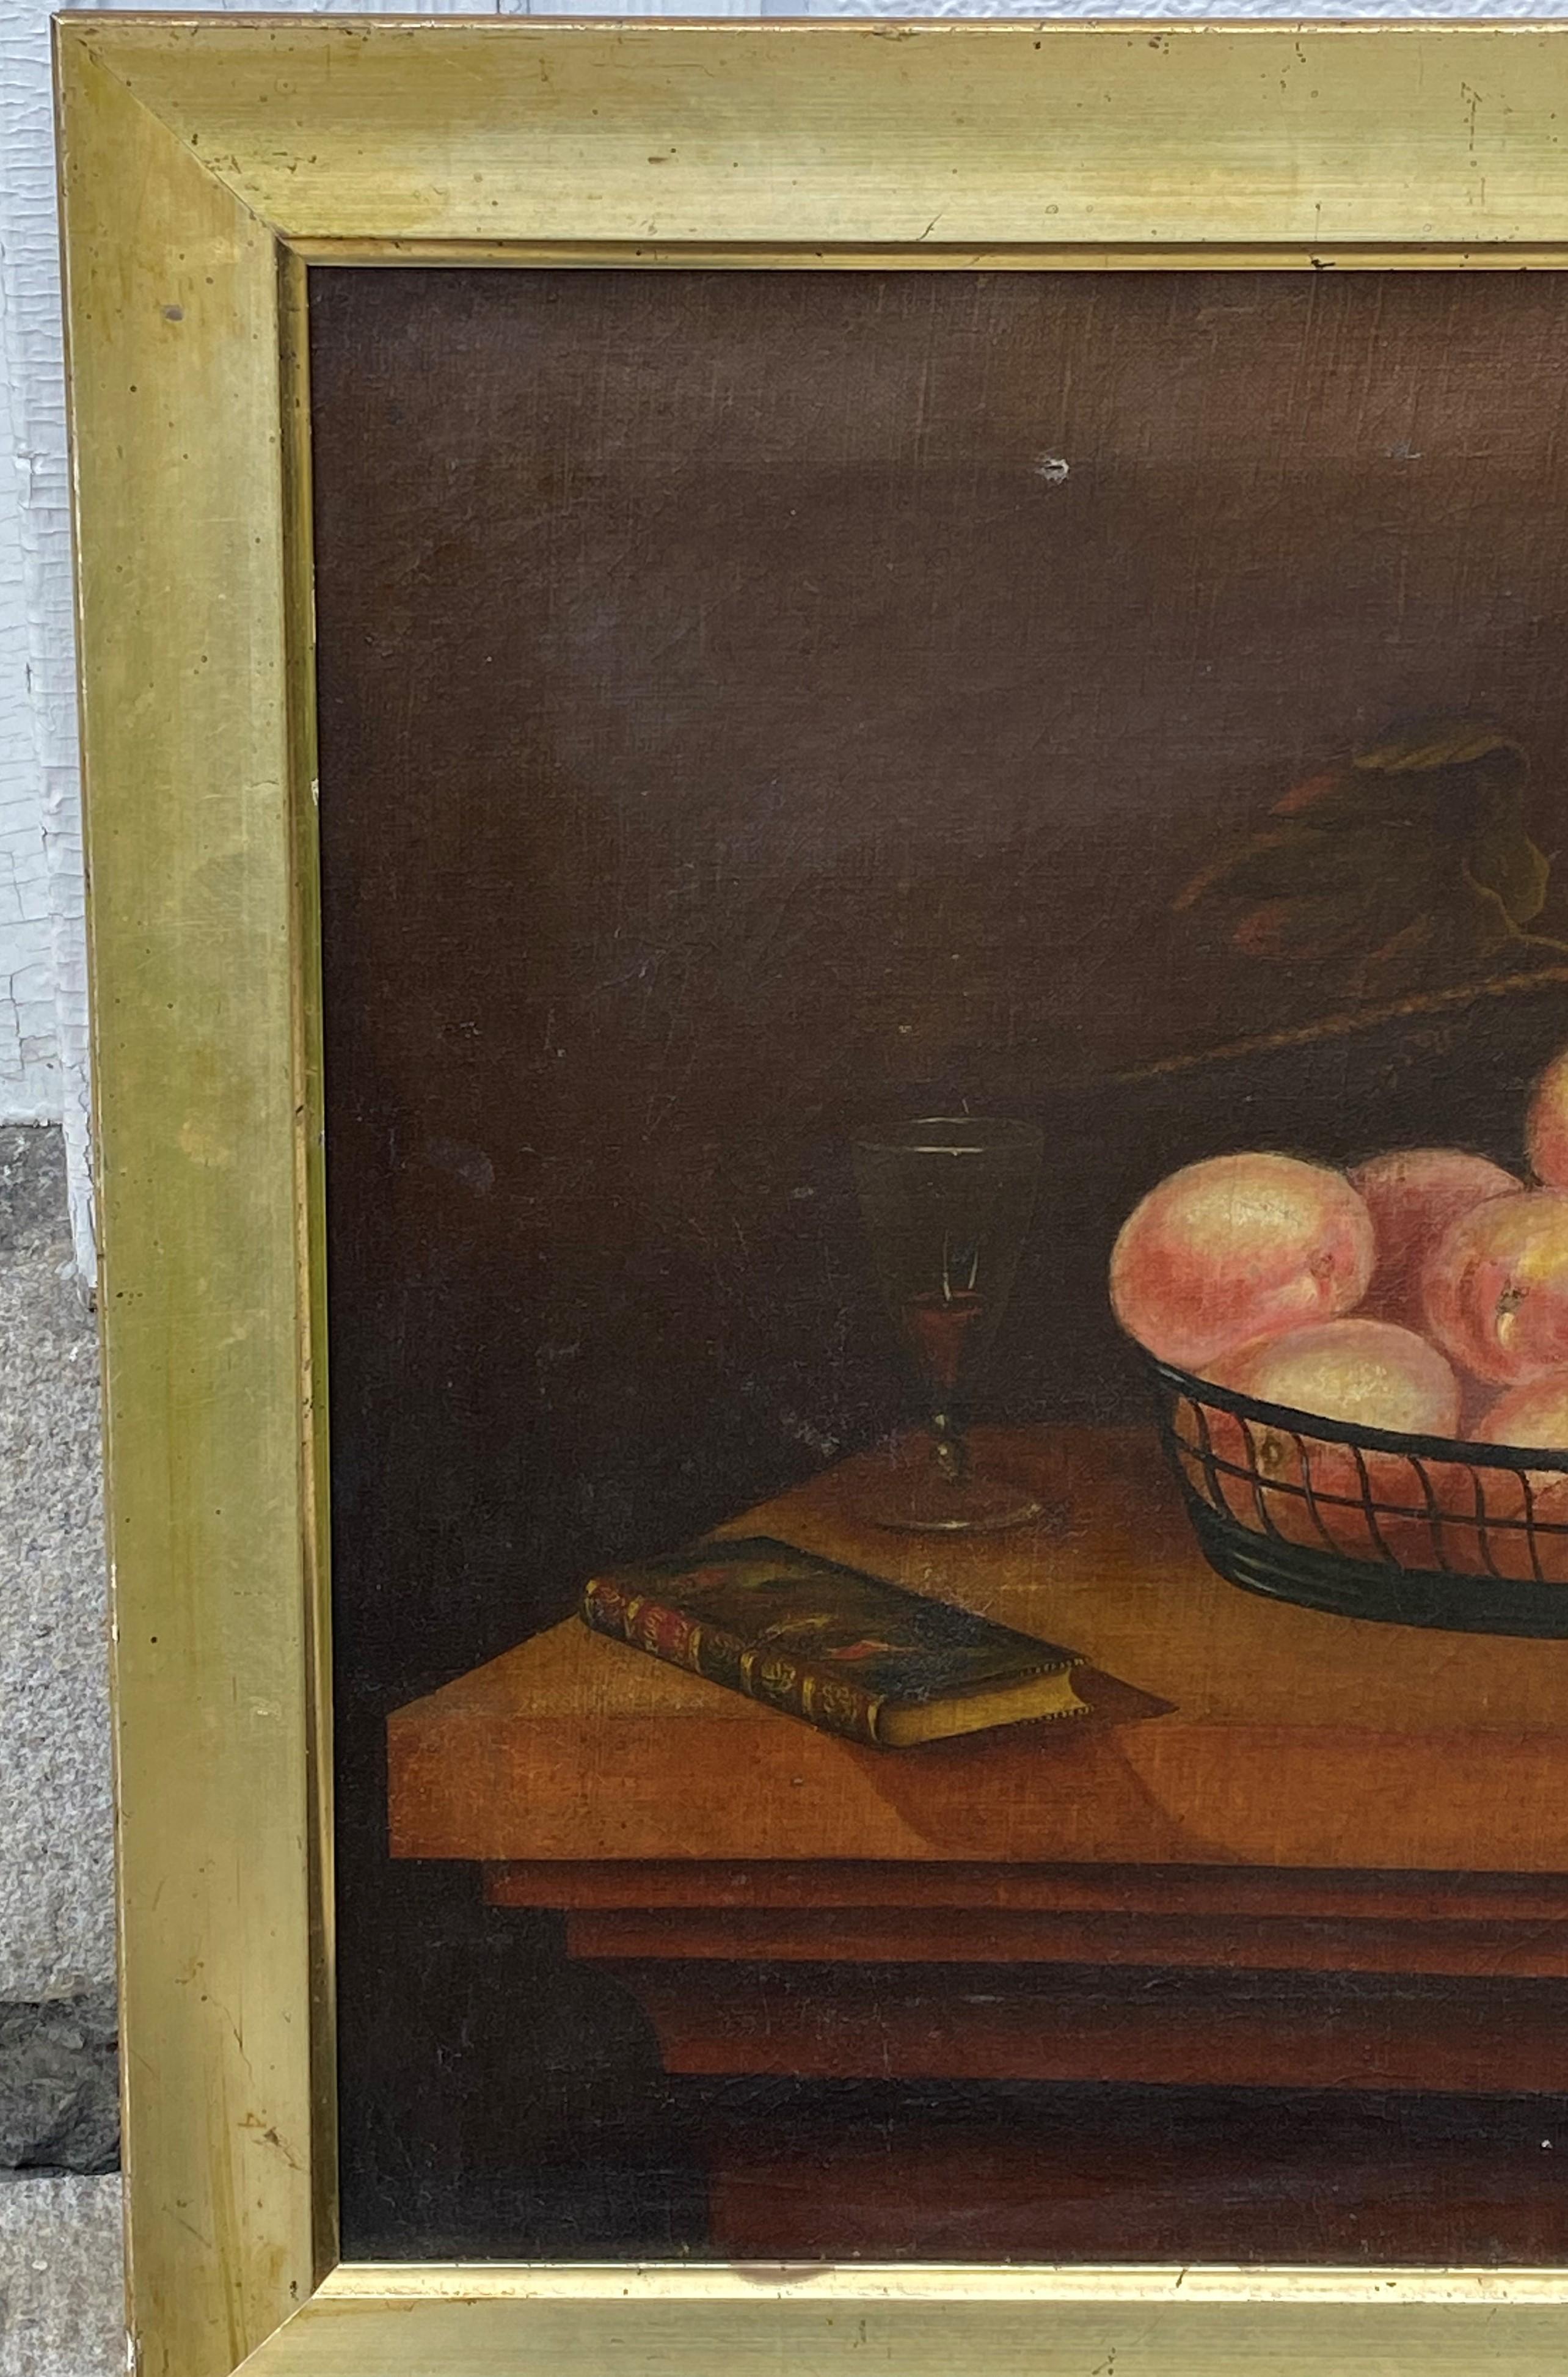 Americana Stilleben von Tisch taop Stilleben mit Obst.  Ein wenig folkig, aber schön.  Öl auf Leinwand, 19. Jh. Rahmen möglicherweise original und in Neuengland gefunden.